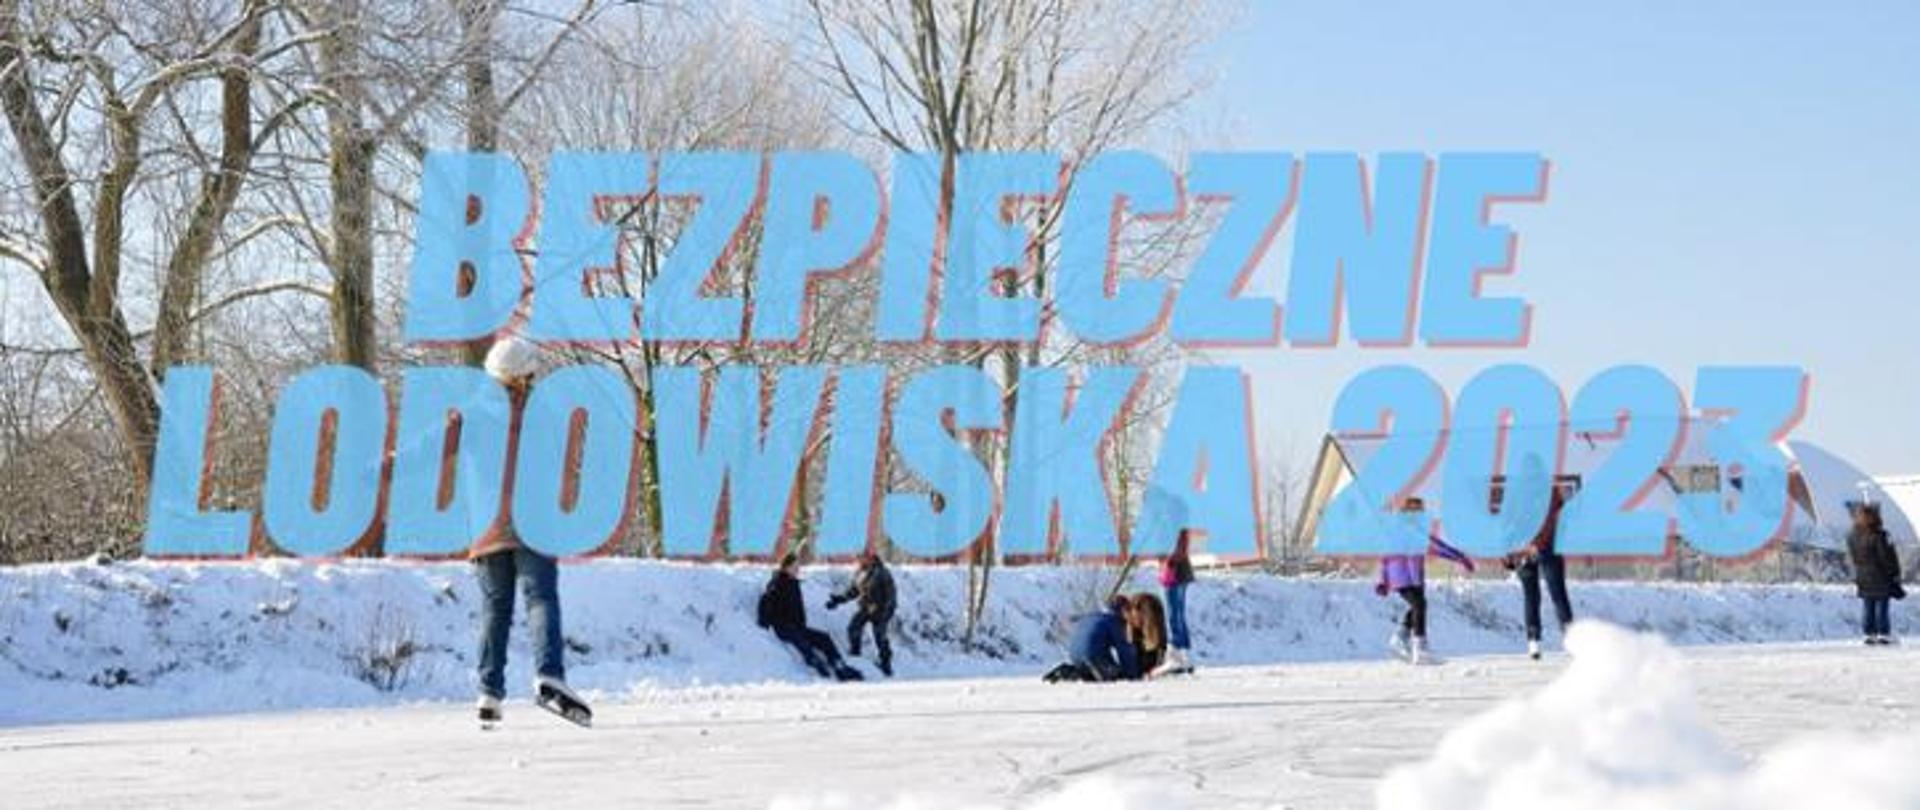 baner z napisem "Bezpieczne lodowiska 2023" W tle ludzie jeżdżący na łyżwach na zewnętrznym lodowisku.